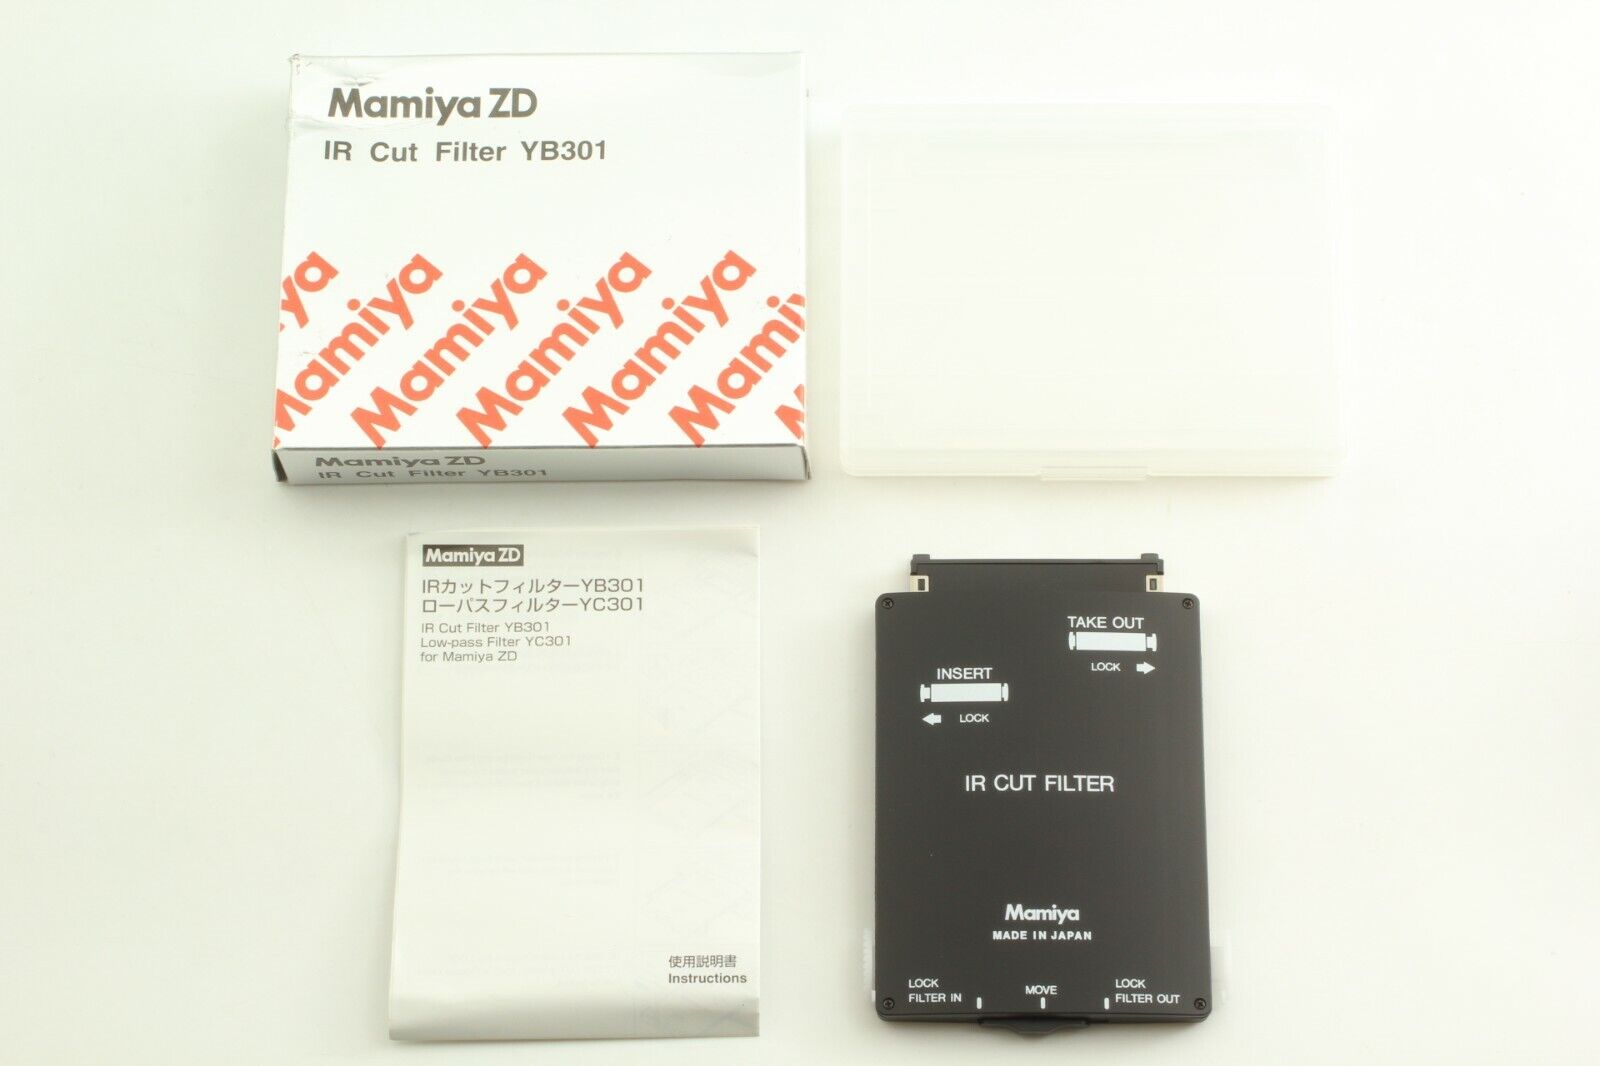 [rare! Unused In Box] Mamiya Zd Ir Cut Filter Yb301 For Mamiya Zd From Japan